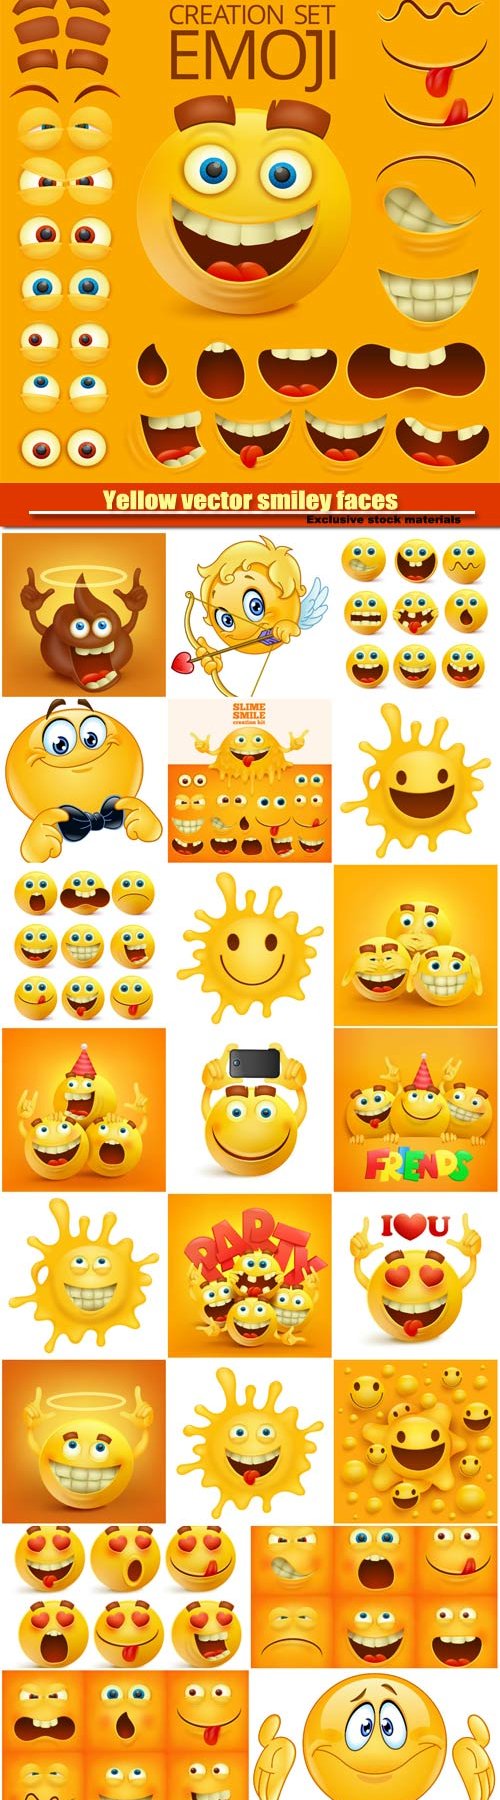 Yellow vector smiley faces